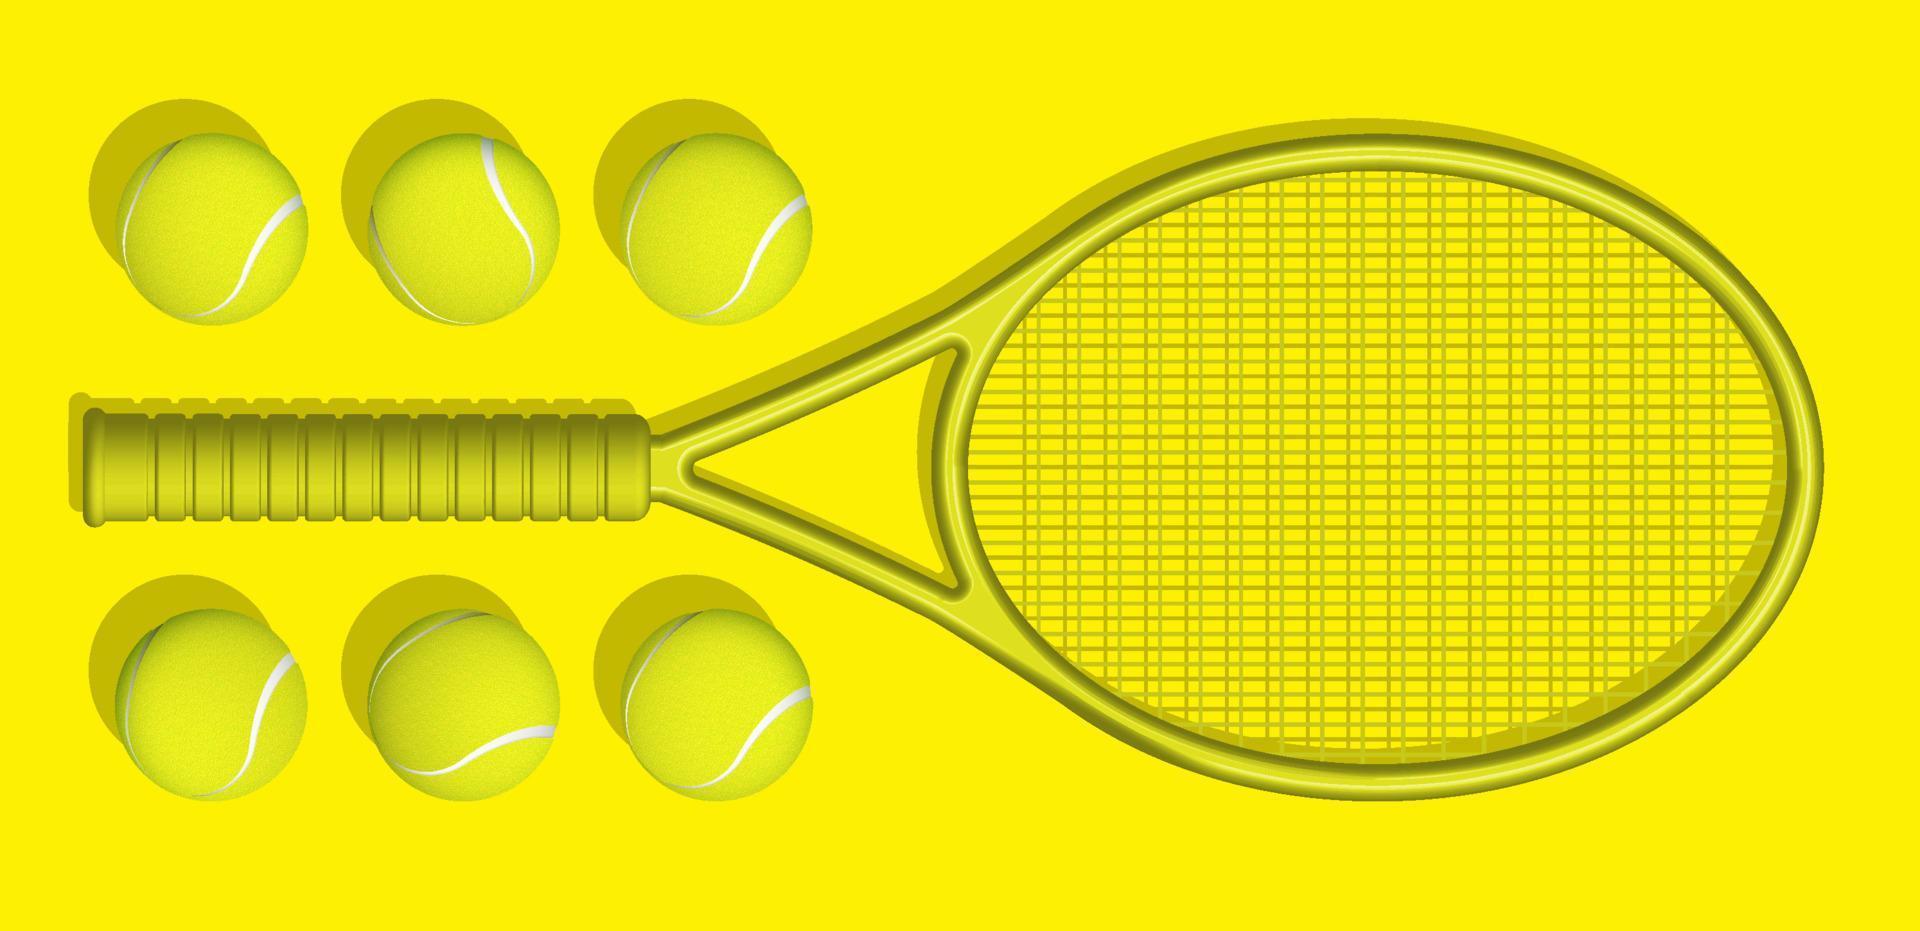 geel tennis rackets en ballen liggen Aan geel achtergrond van tennis rechtbank. sport uitrusting en voorraad. realistisch vector